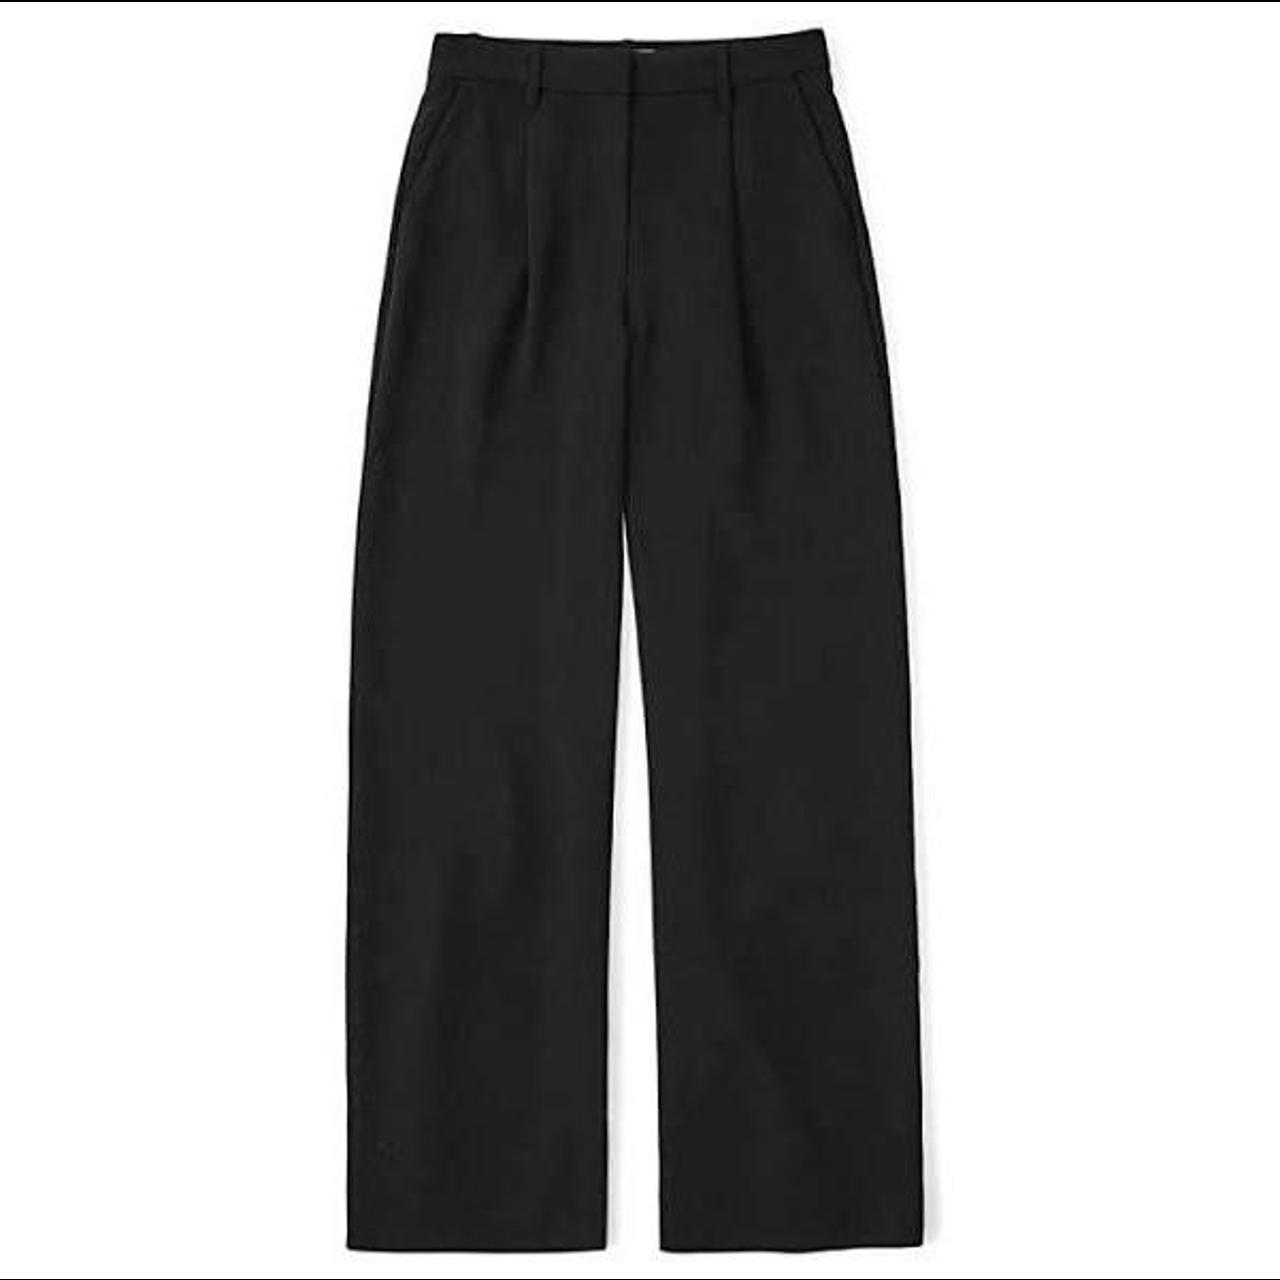 Abercrombie & Fitch Women's Black Trousers | Depop